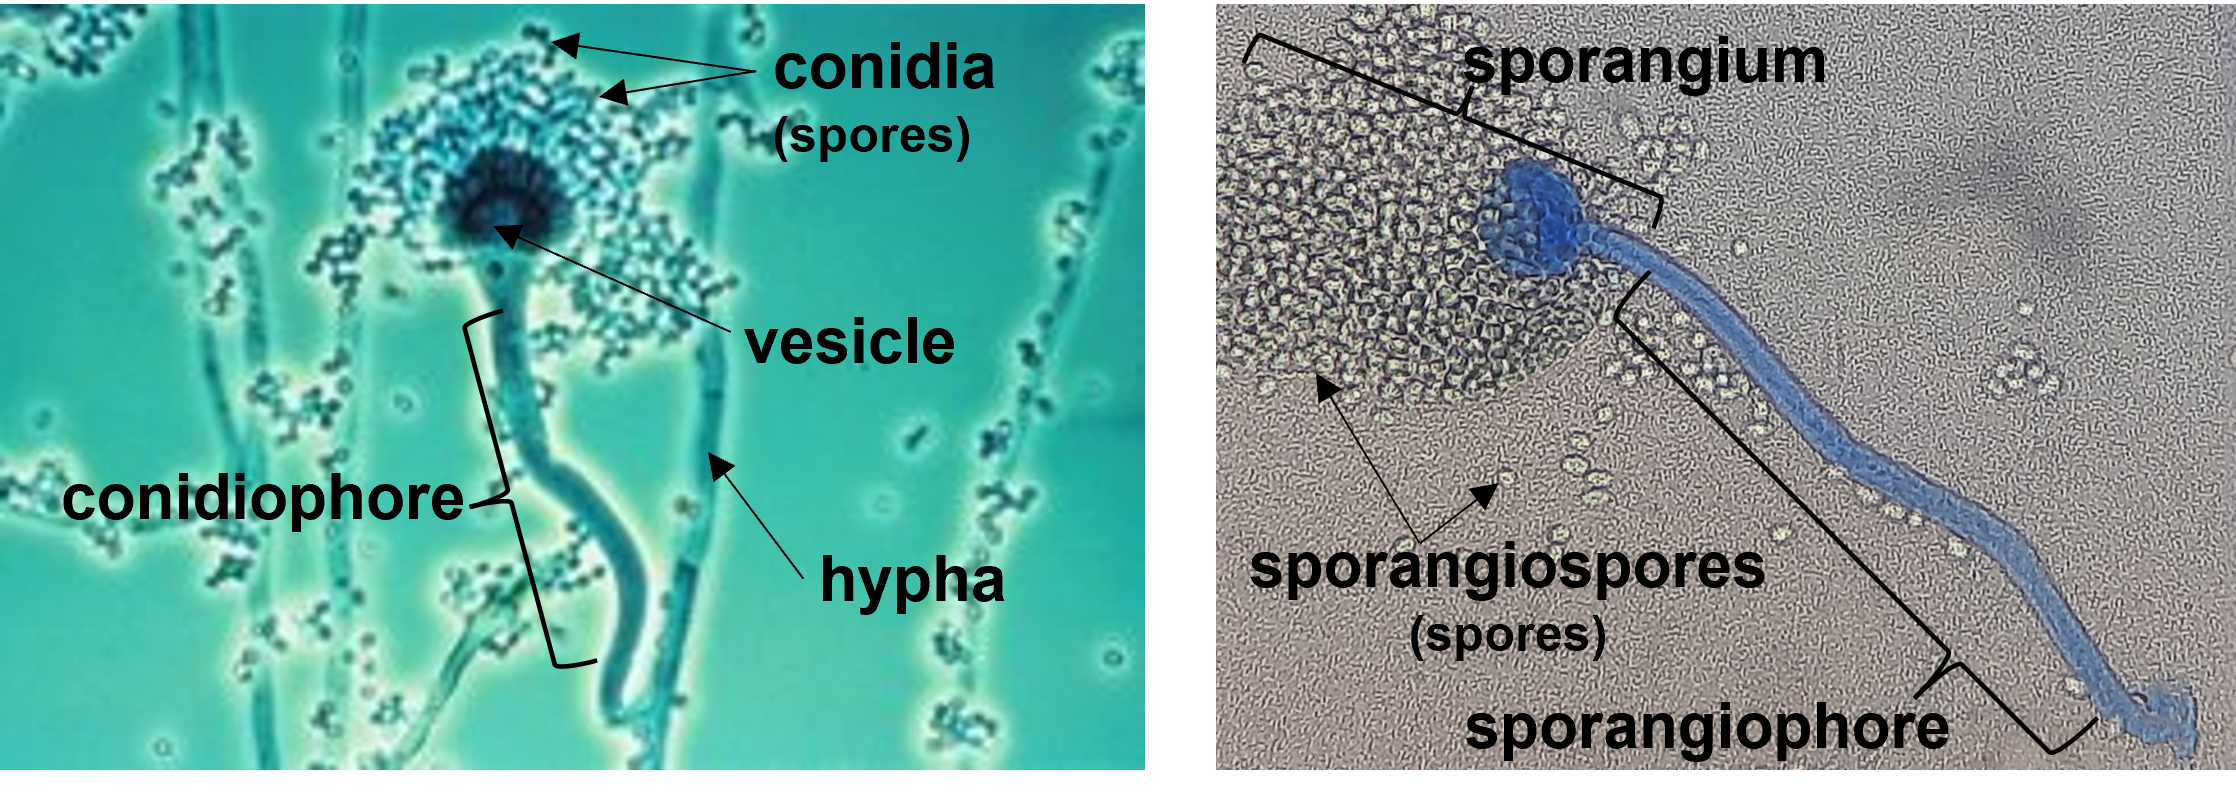 conidia and sporangiospores